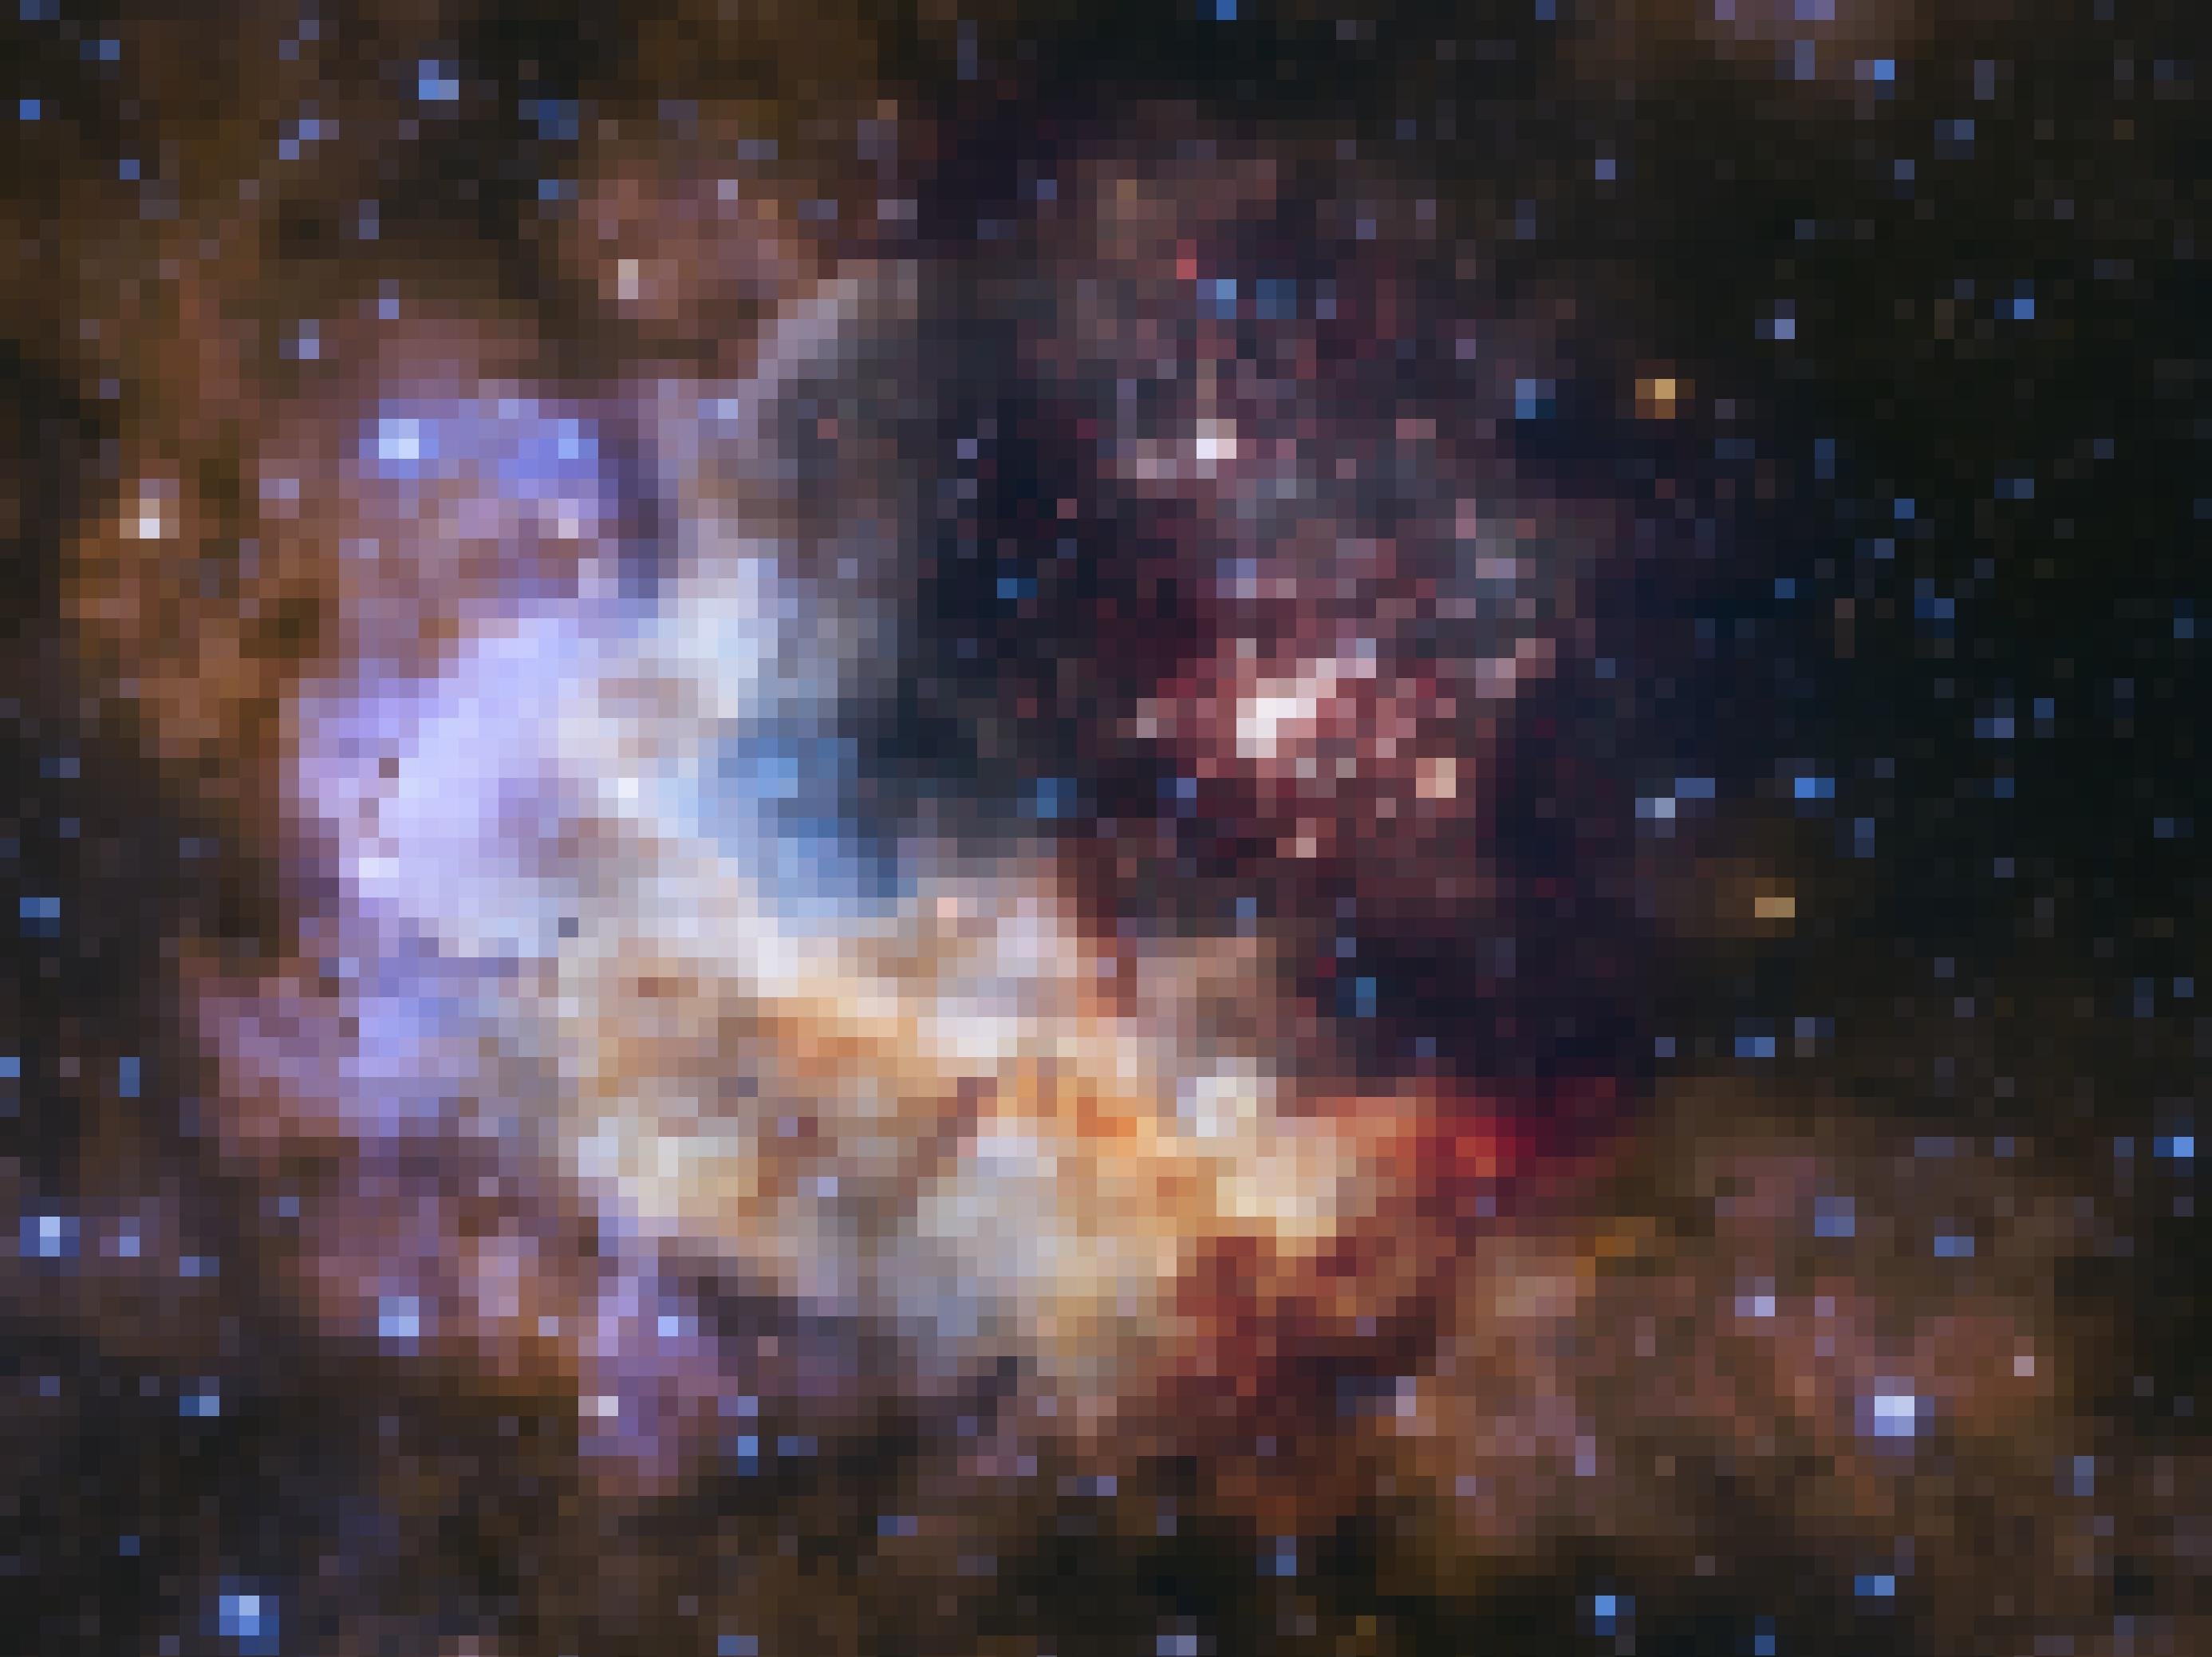 Auf diesem Bild sind rechts vom Zentrum zahlreiche junge, rötliche Sterne zu erkennen, während sich von links oben bis nach rechts unten ein bogenförmiges Arrangement von Staubwolken in zumeist rötlichen bis gelblichen, aber auch bläulichen Farbtönen hinzieht. Es handelt sich um Sternentstehungsbiet im Sternbild Carina, das vom Hubble-Weltraumteleskop mit seiner „Wide Field Camera 3“ im aufgenommen wurde. Da die Kamera mit Licht im nahen Infrarotbereich arbeitet, vermochte sie auch durch die Materiewolken hindurch zu blicken, die normalerweise die jungen Sterne verbergen.